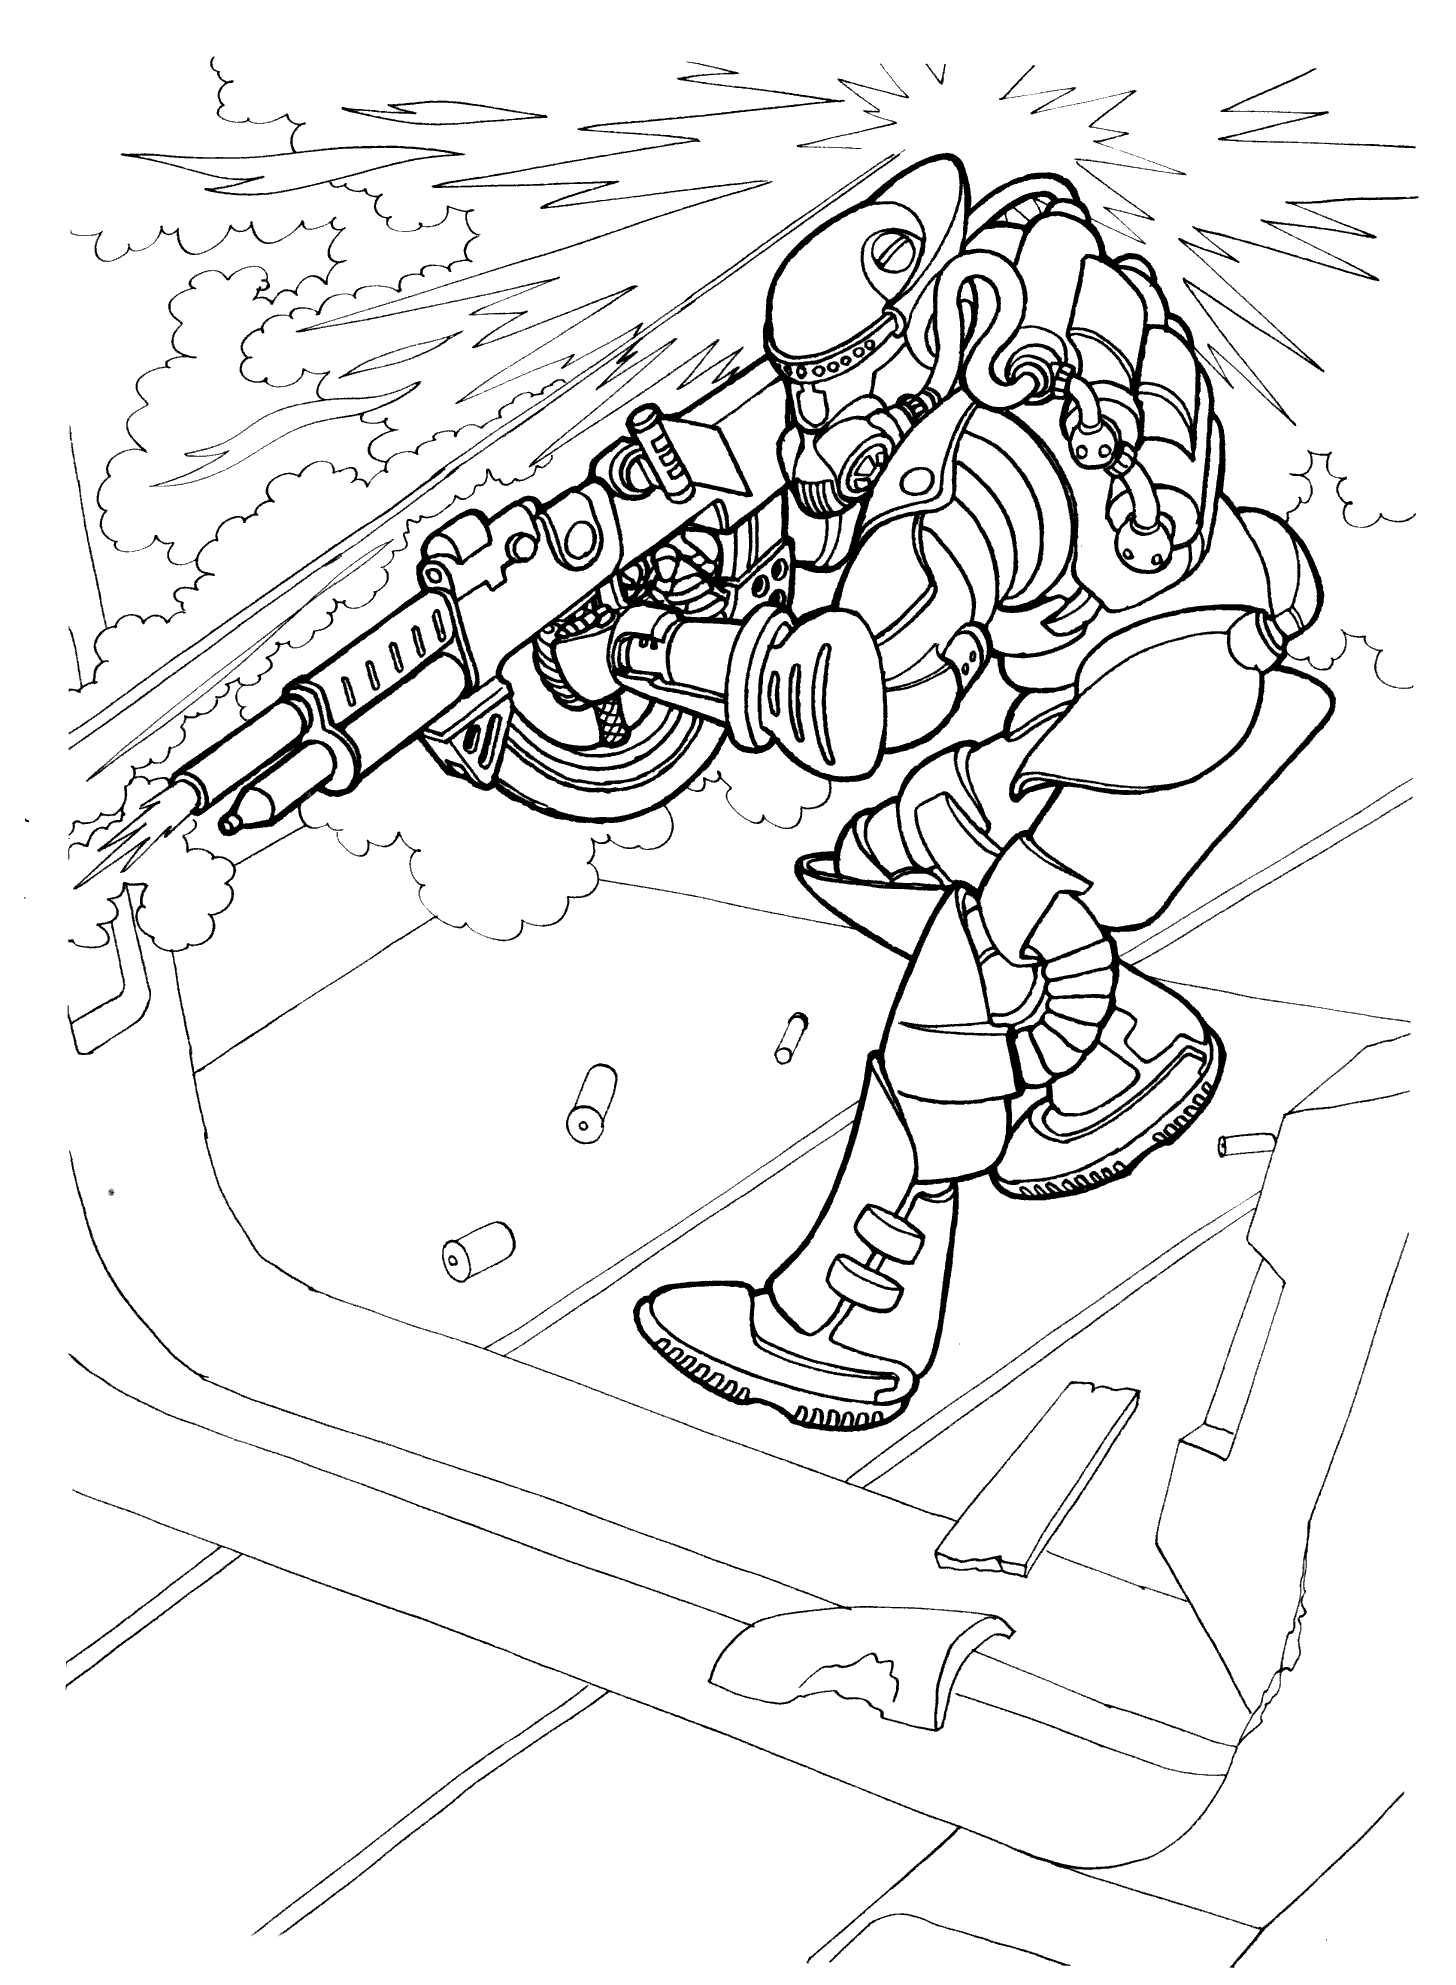 Dibujo para colorear - El soldado del futuro en la acción